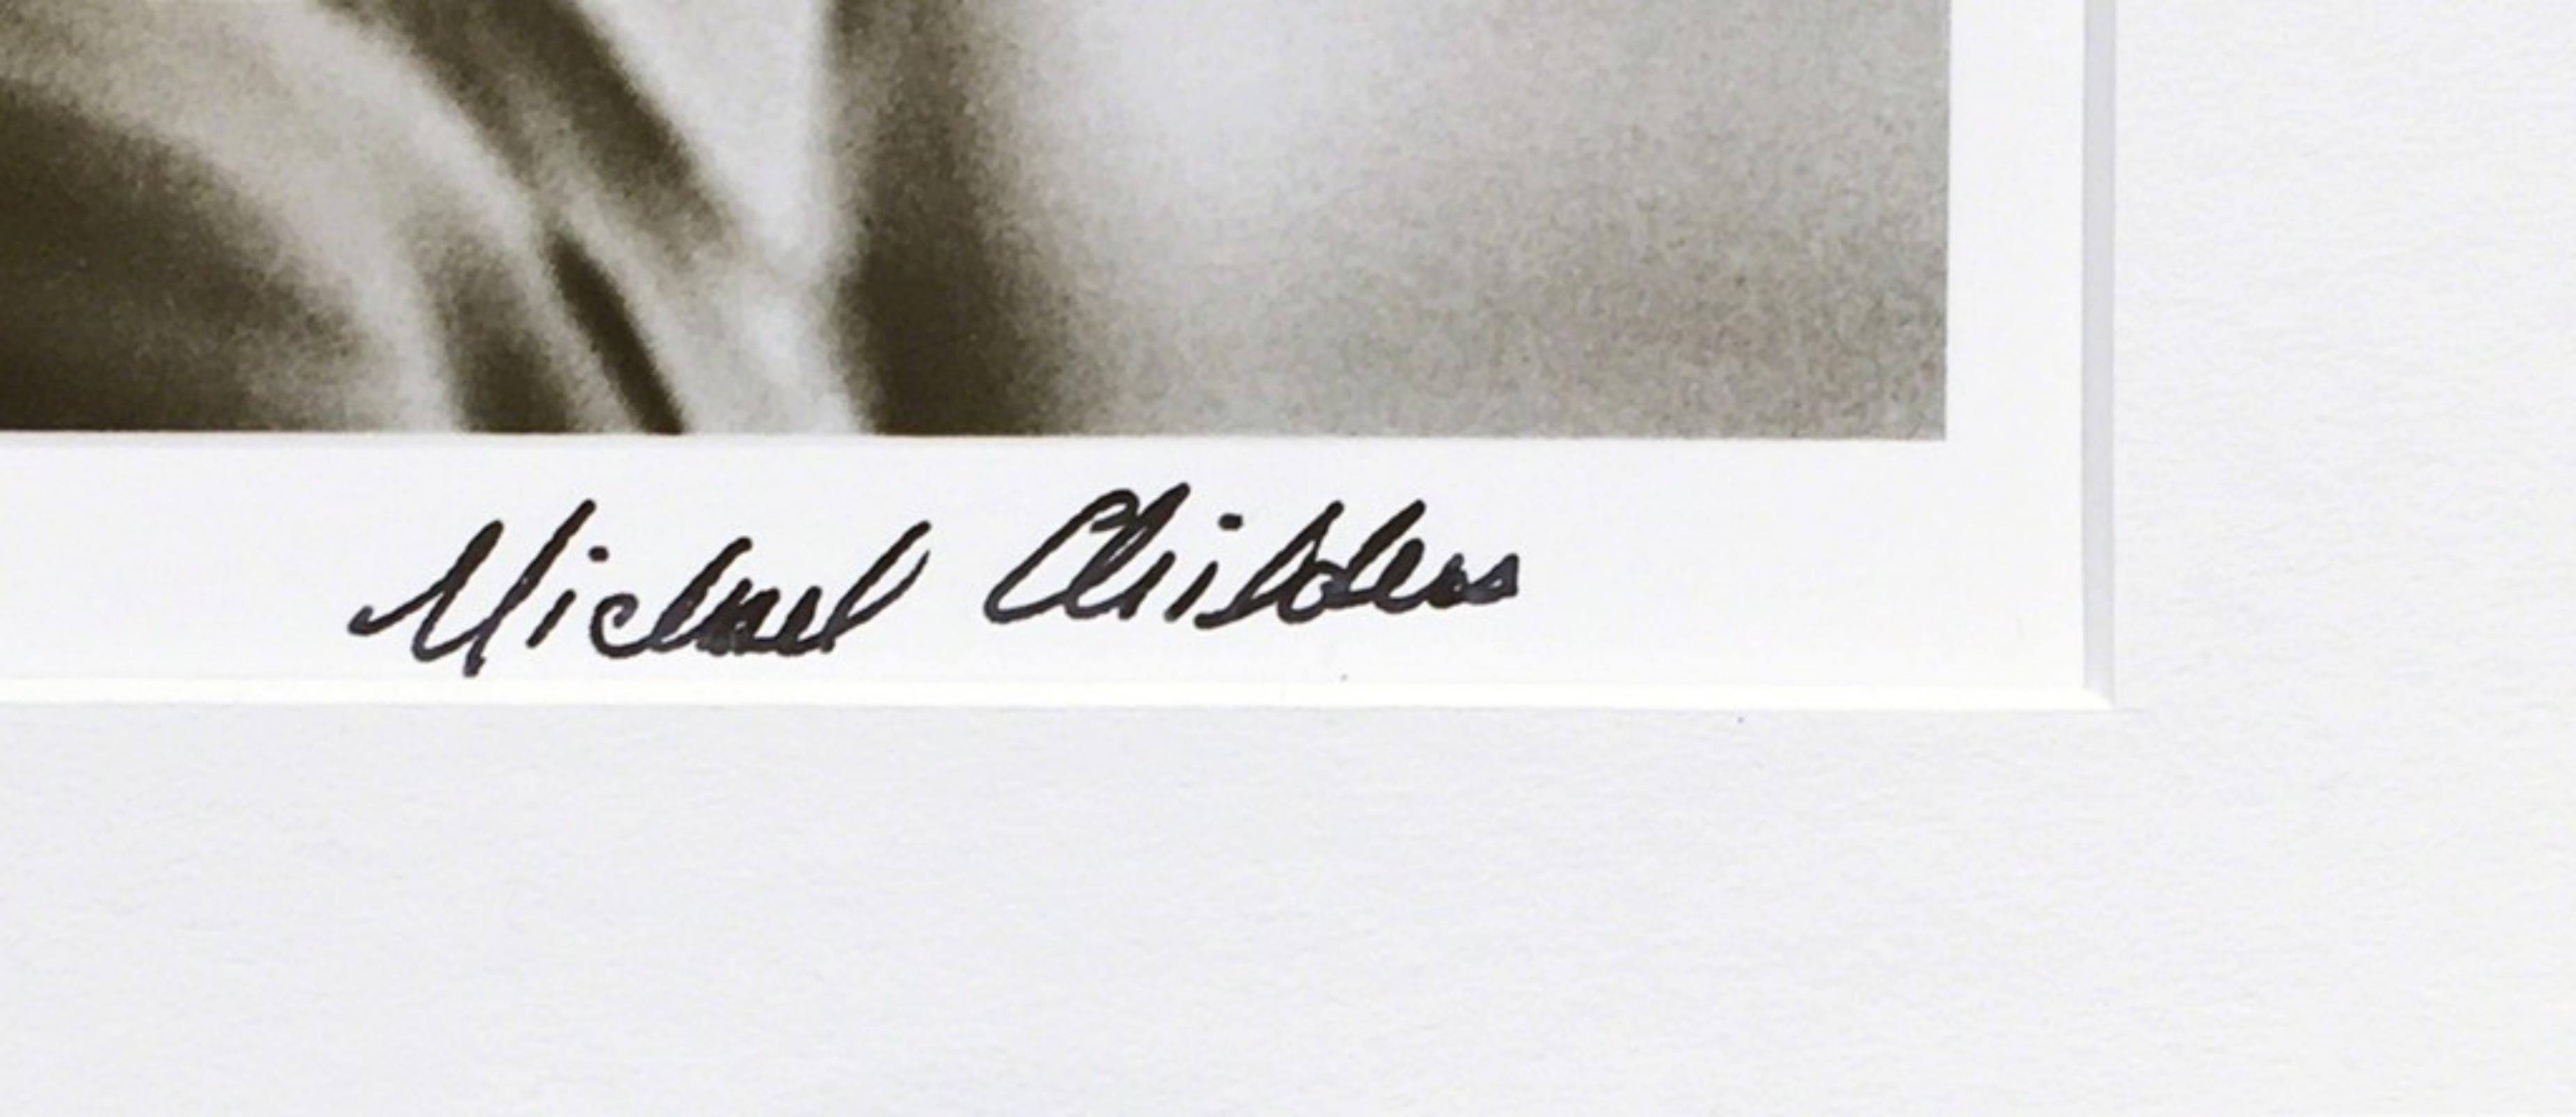 MICHAEL CHILDERS
Andy Warhol dans son studio de New York, 1976
Tirage photographique
Imprimé en 2007 
Signé en gras au recto au stylo feutre noir par le photographe Michael Childers.
Cadre inclus : dans le cadre original donné par le photographe au